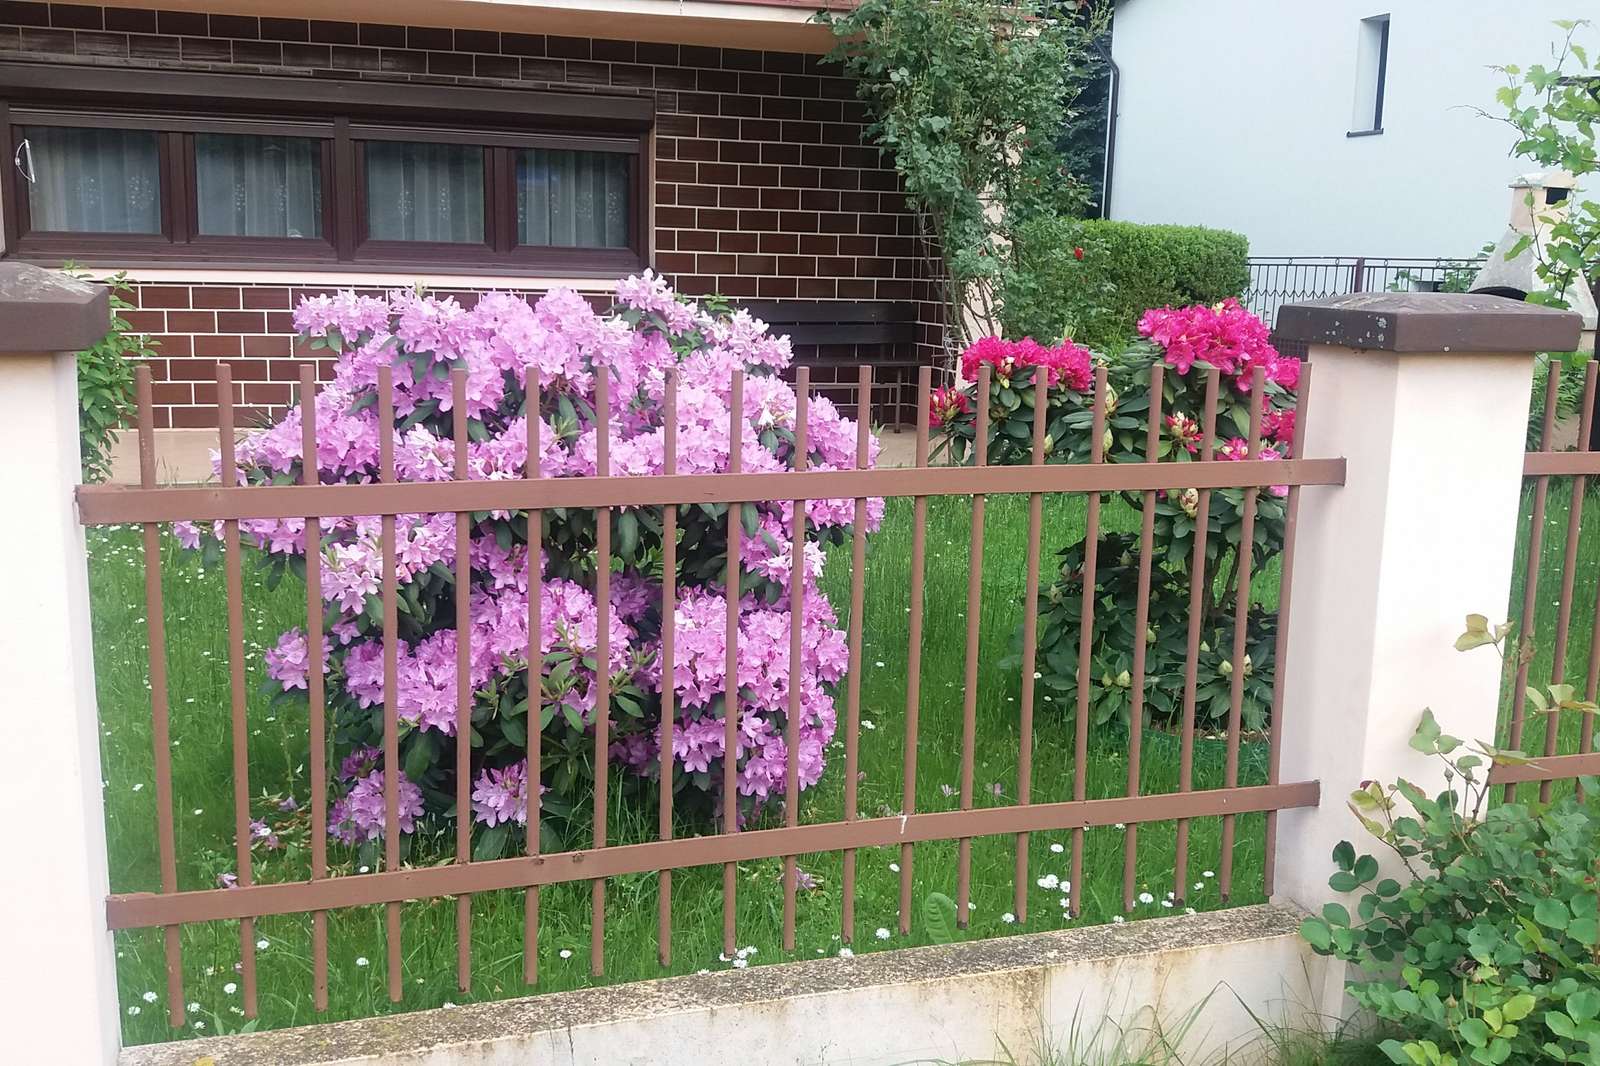 Rhododendrons achter het hek. online puzzel